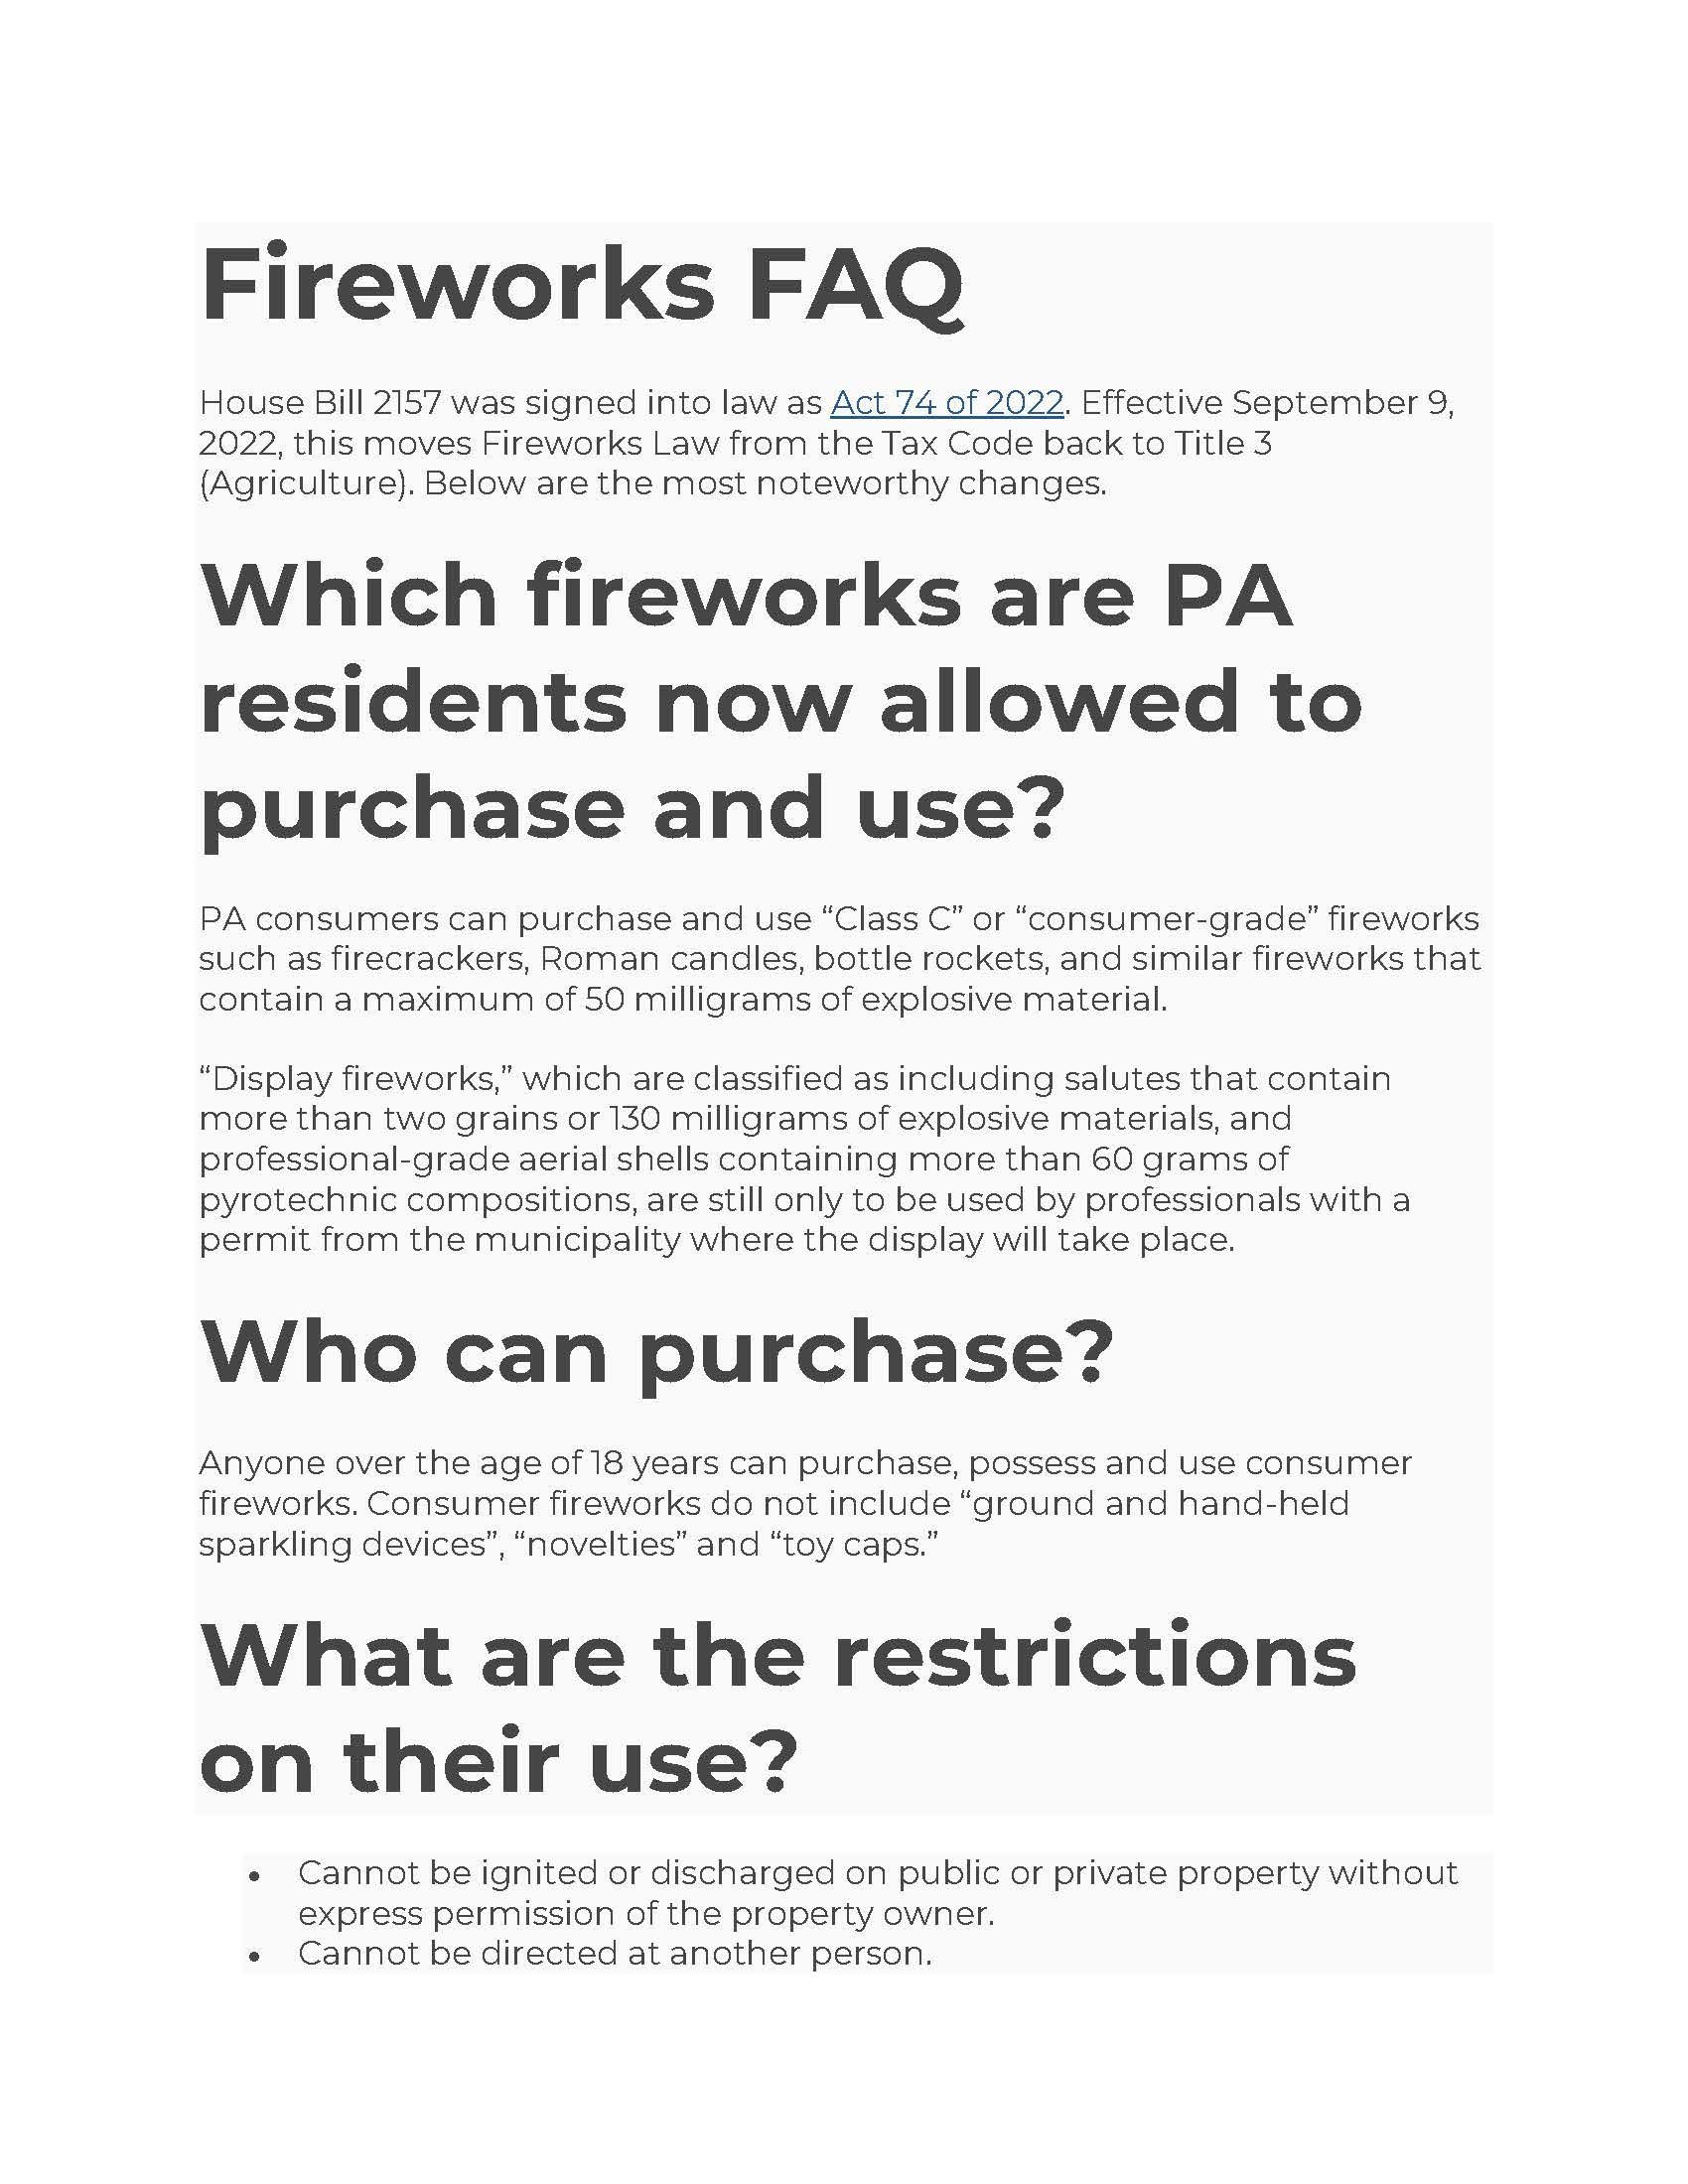 Fireworks FAQ's